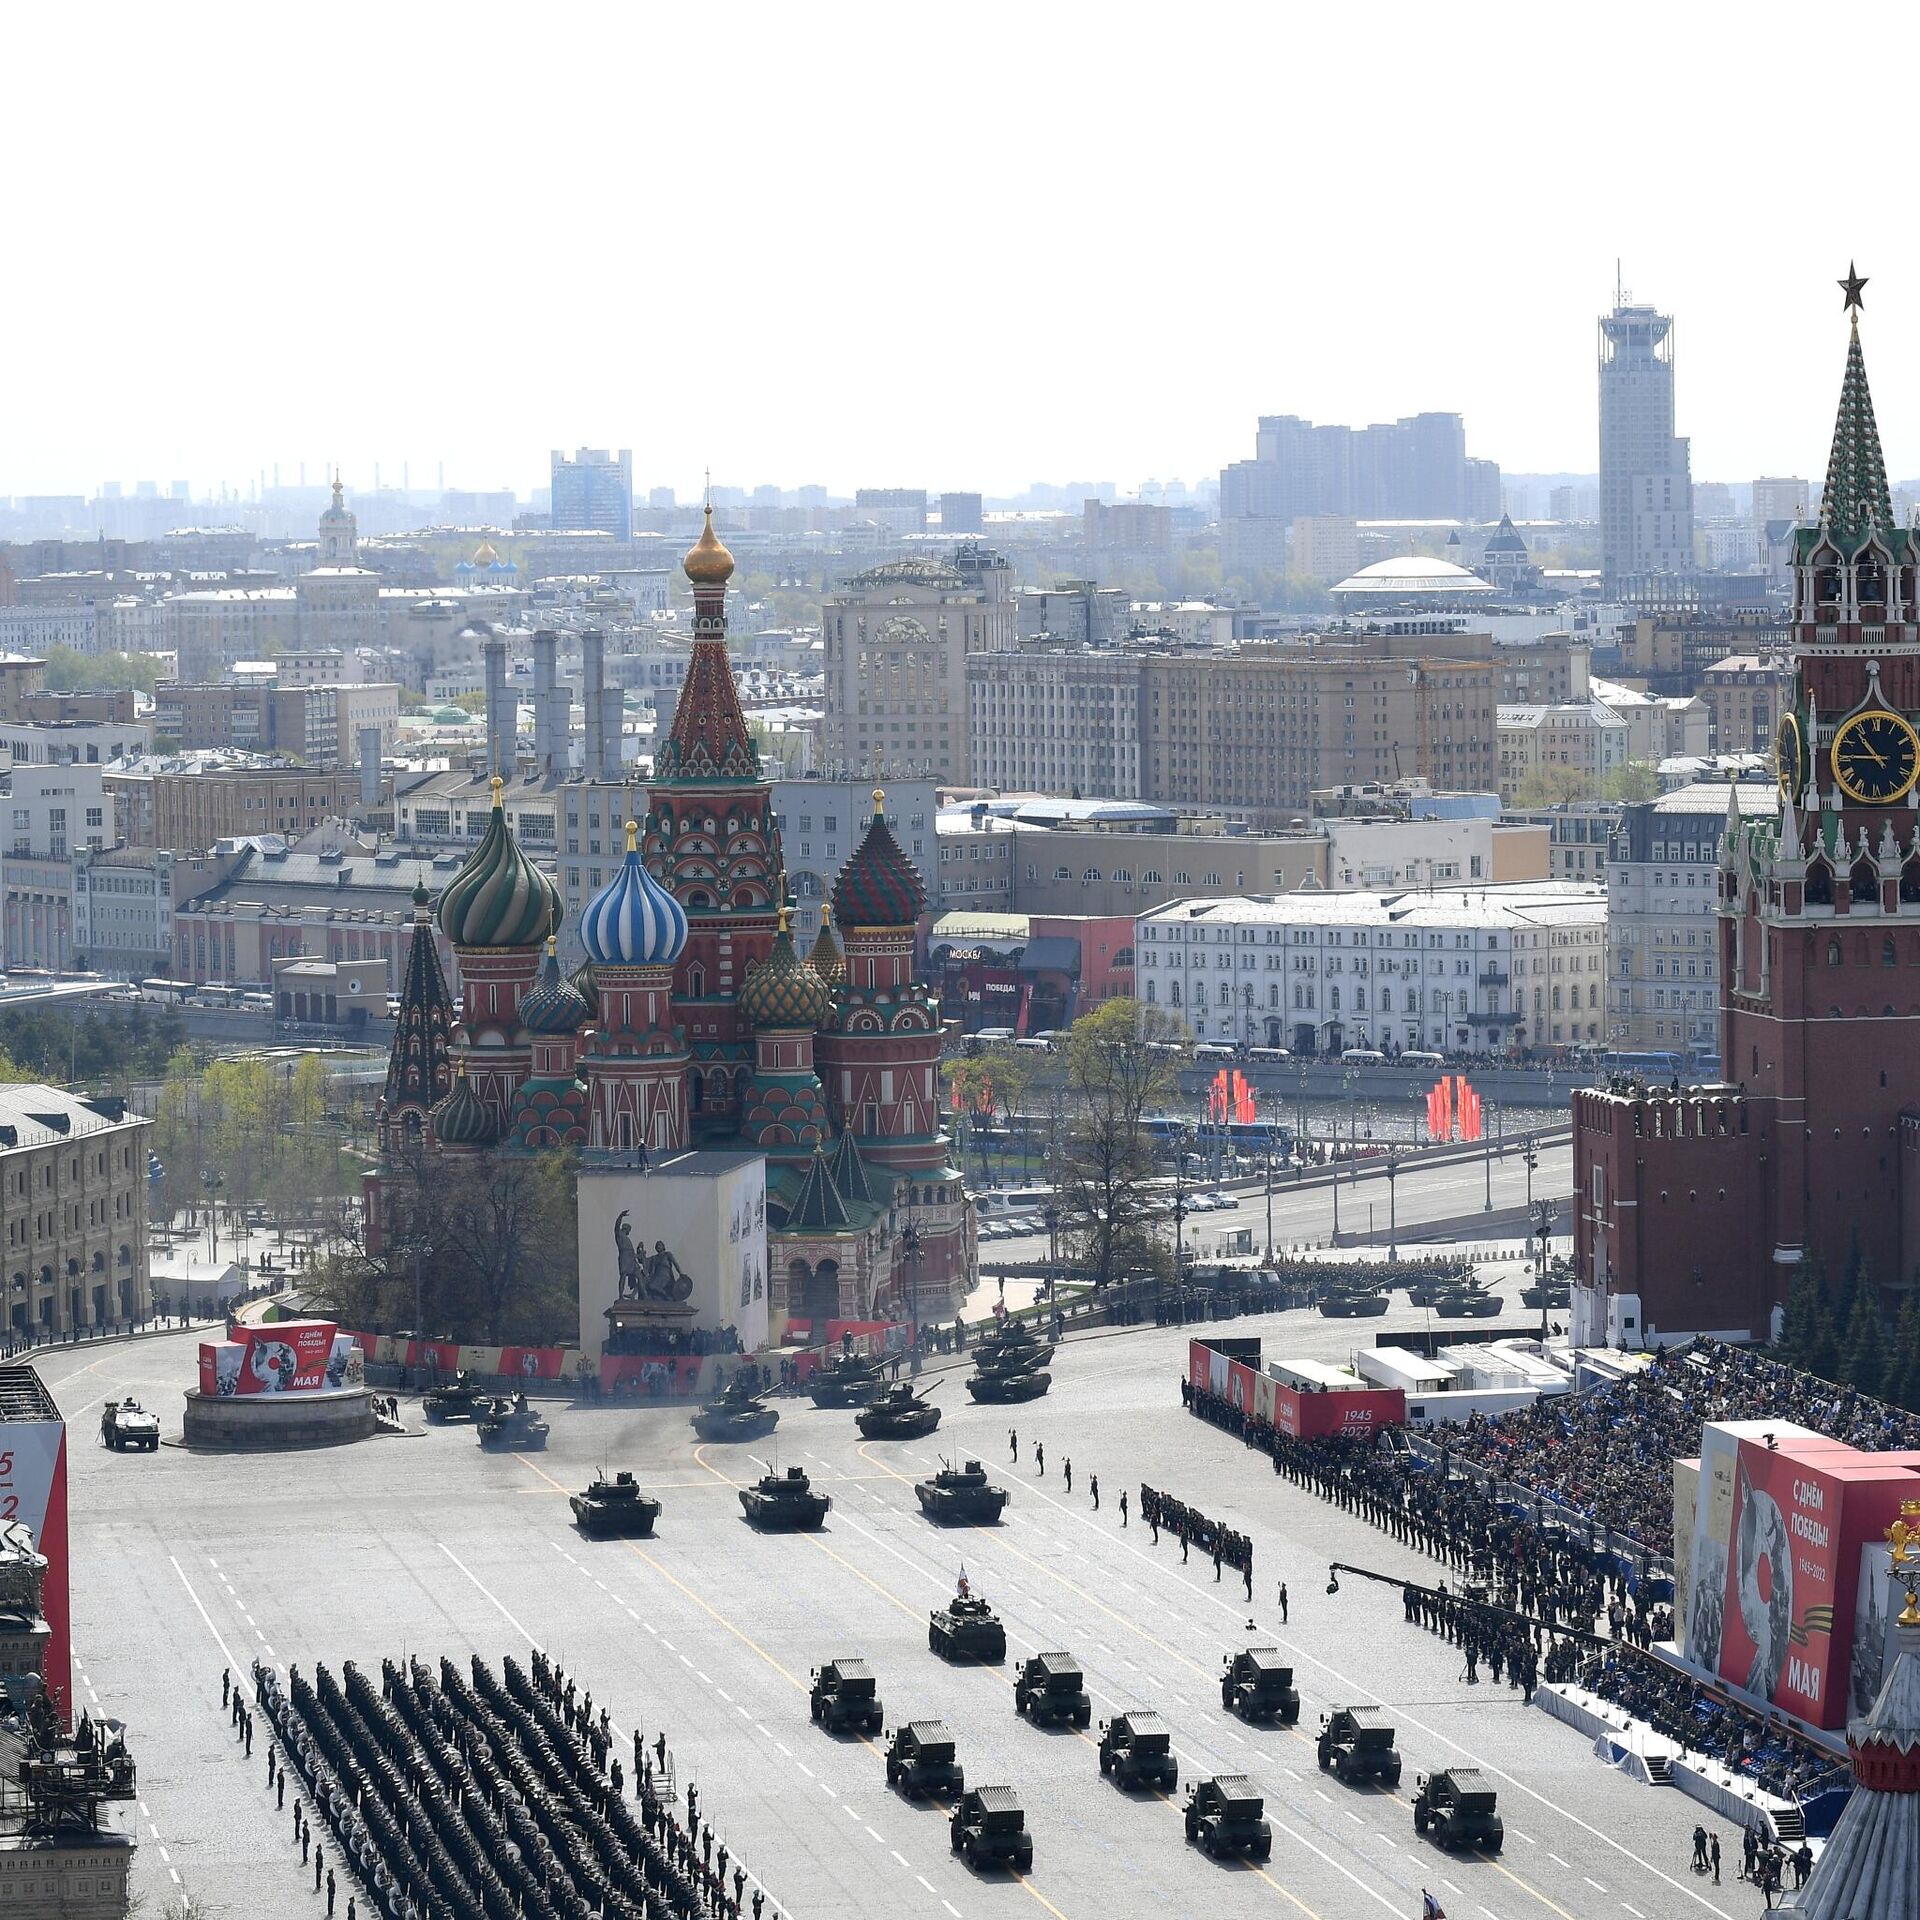 莫斯科红场举行胜利阅兵总排演 - 2021年5月7日, 俄罗斯卫星通讯社